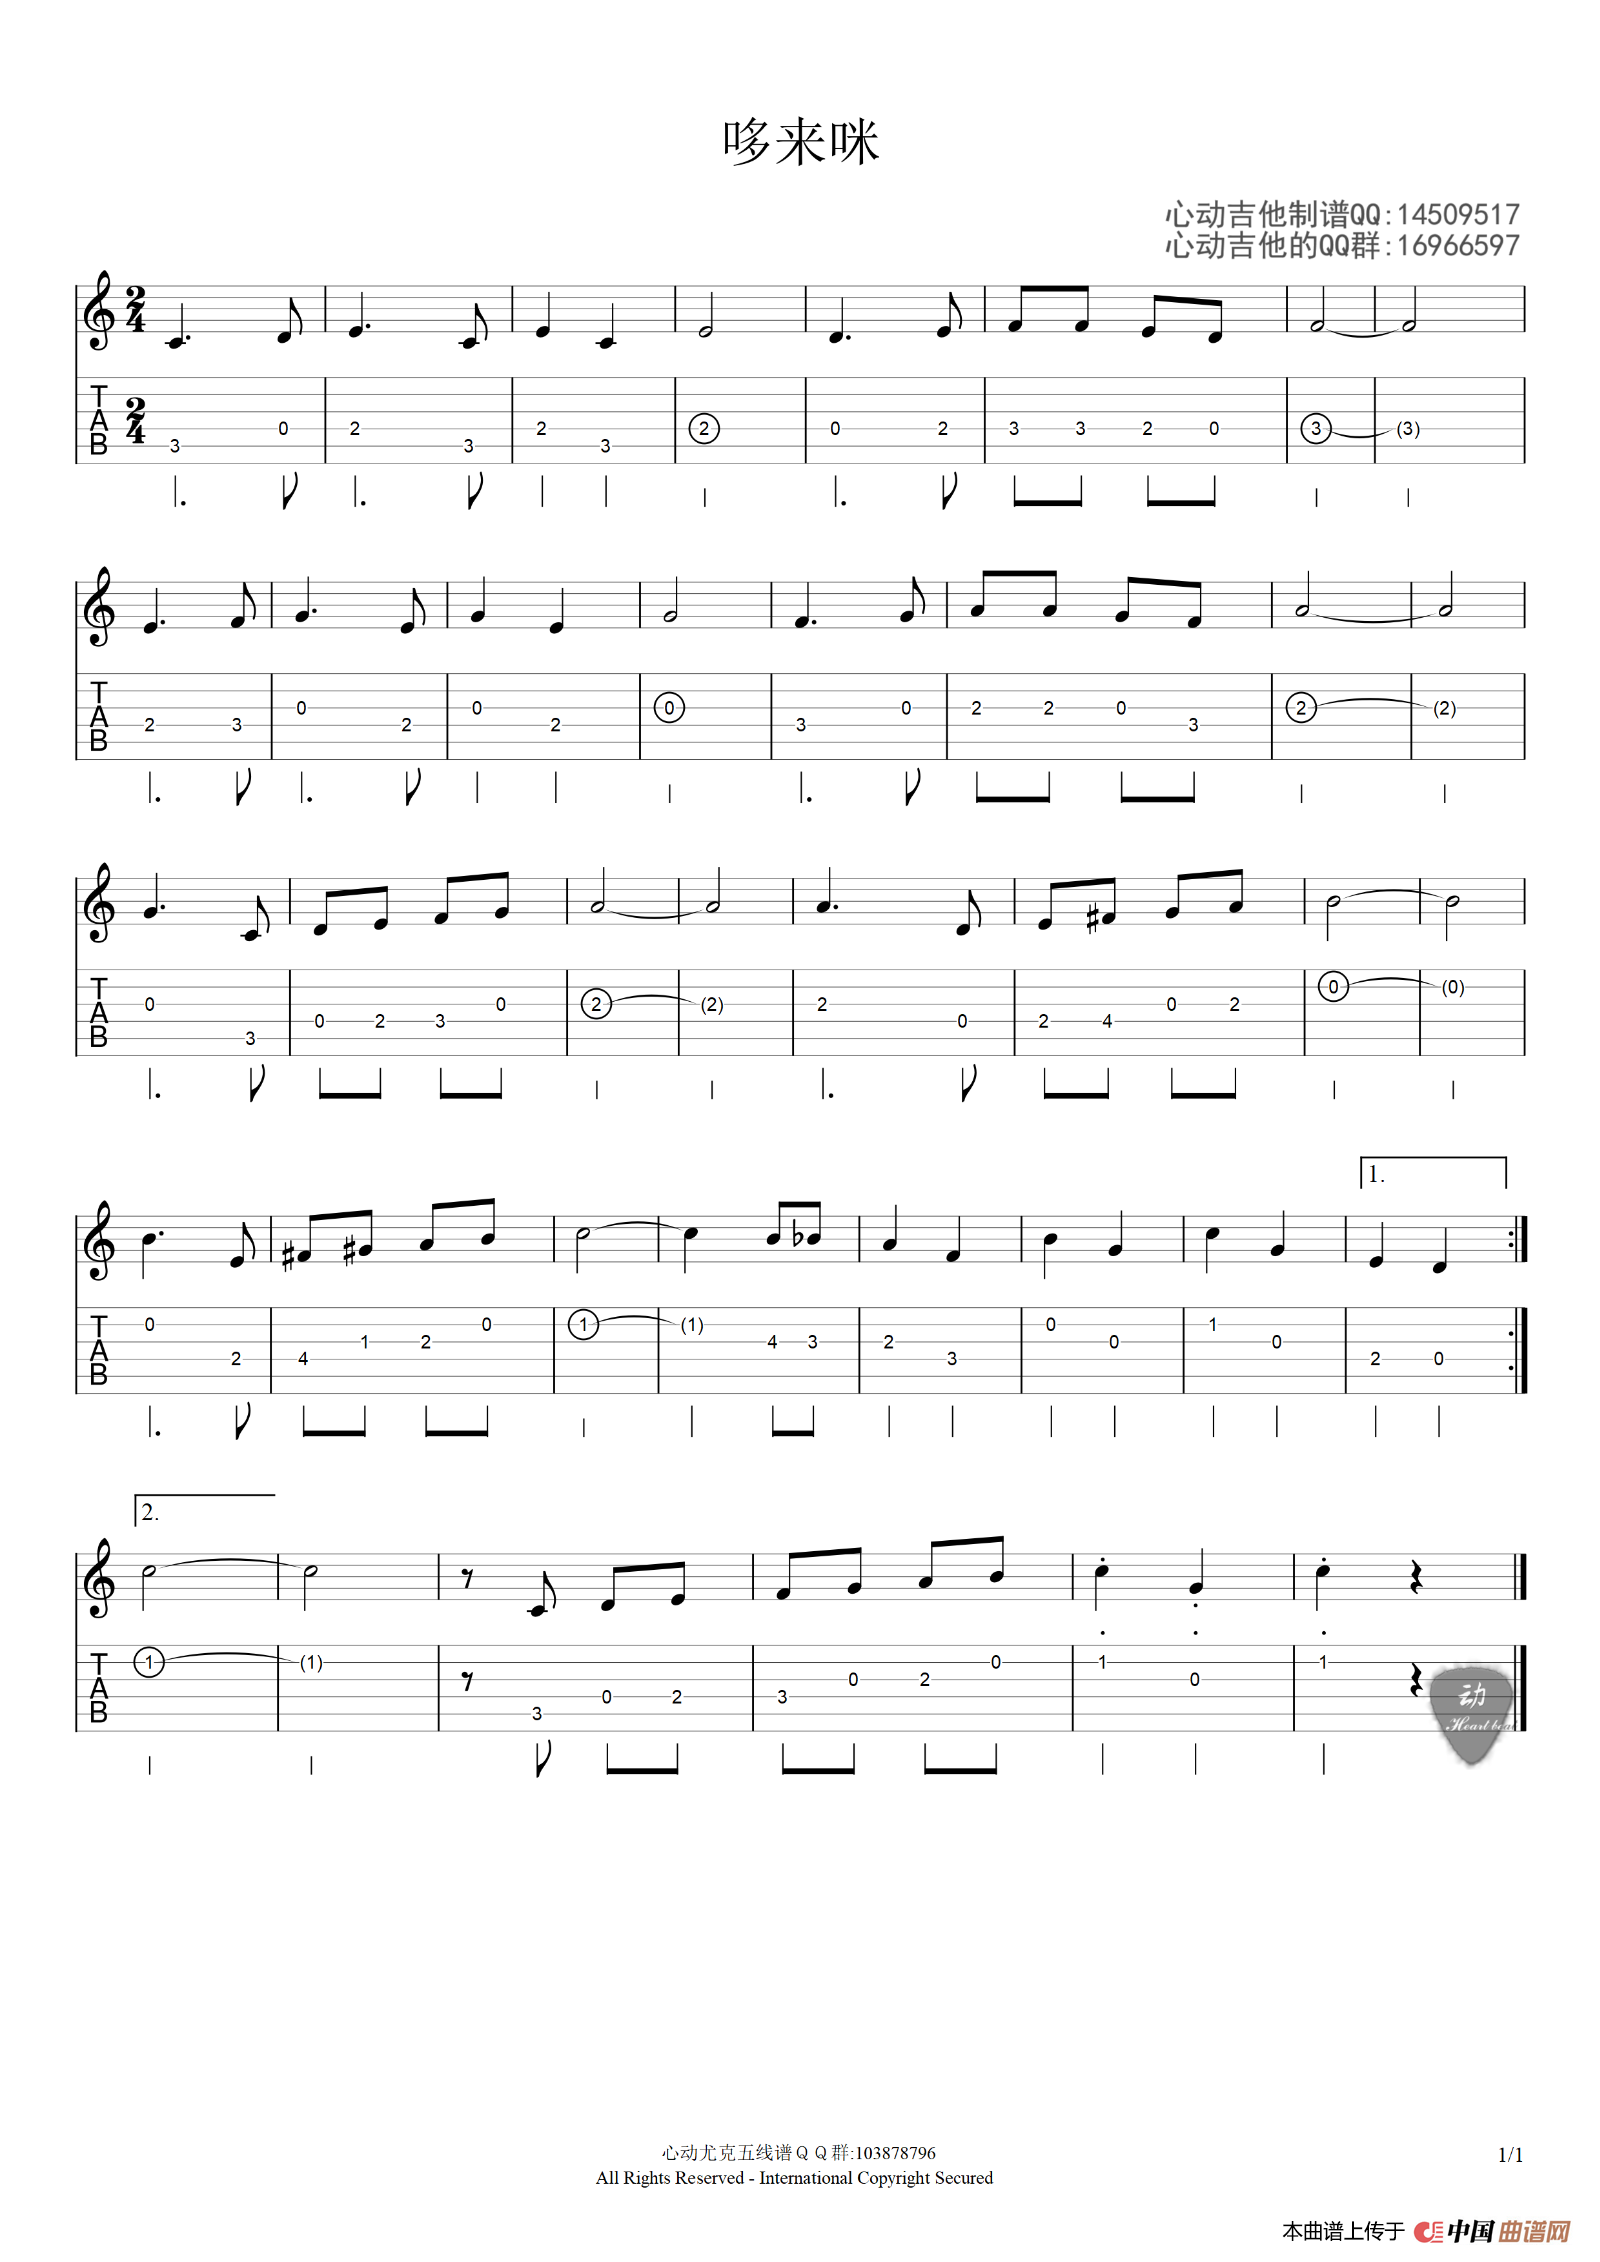 哆来咪-音乐之声插曲双手简谱预览1-钢琴谱文件（五线谱、双手简谱、数字谱、Midi、PDF）免费下载